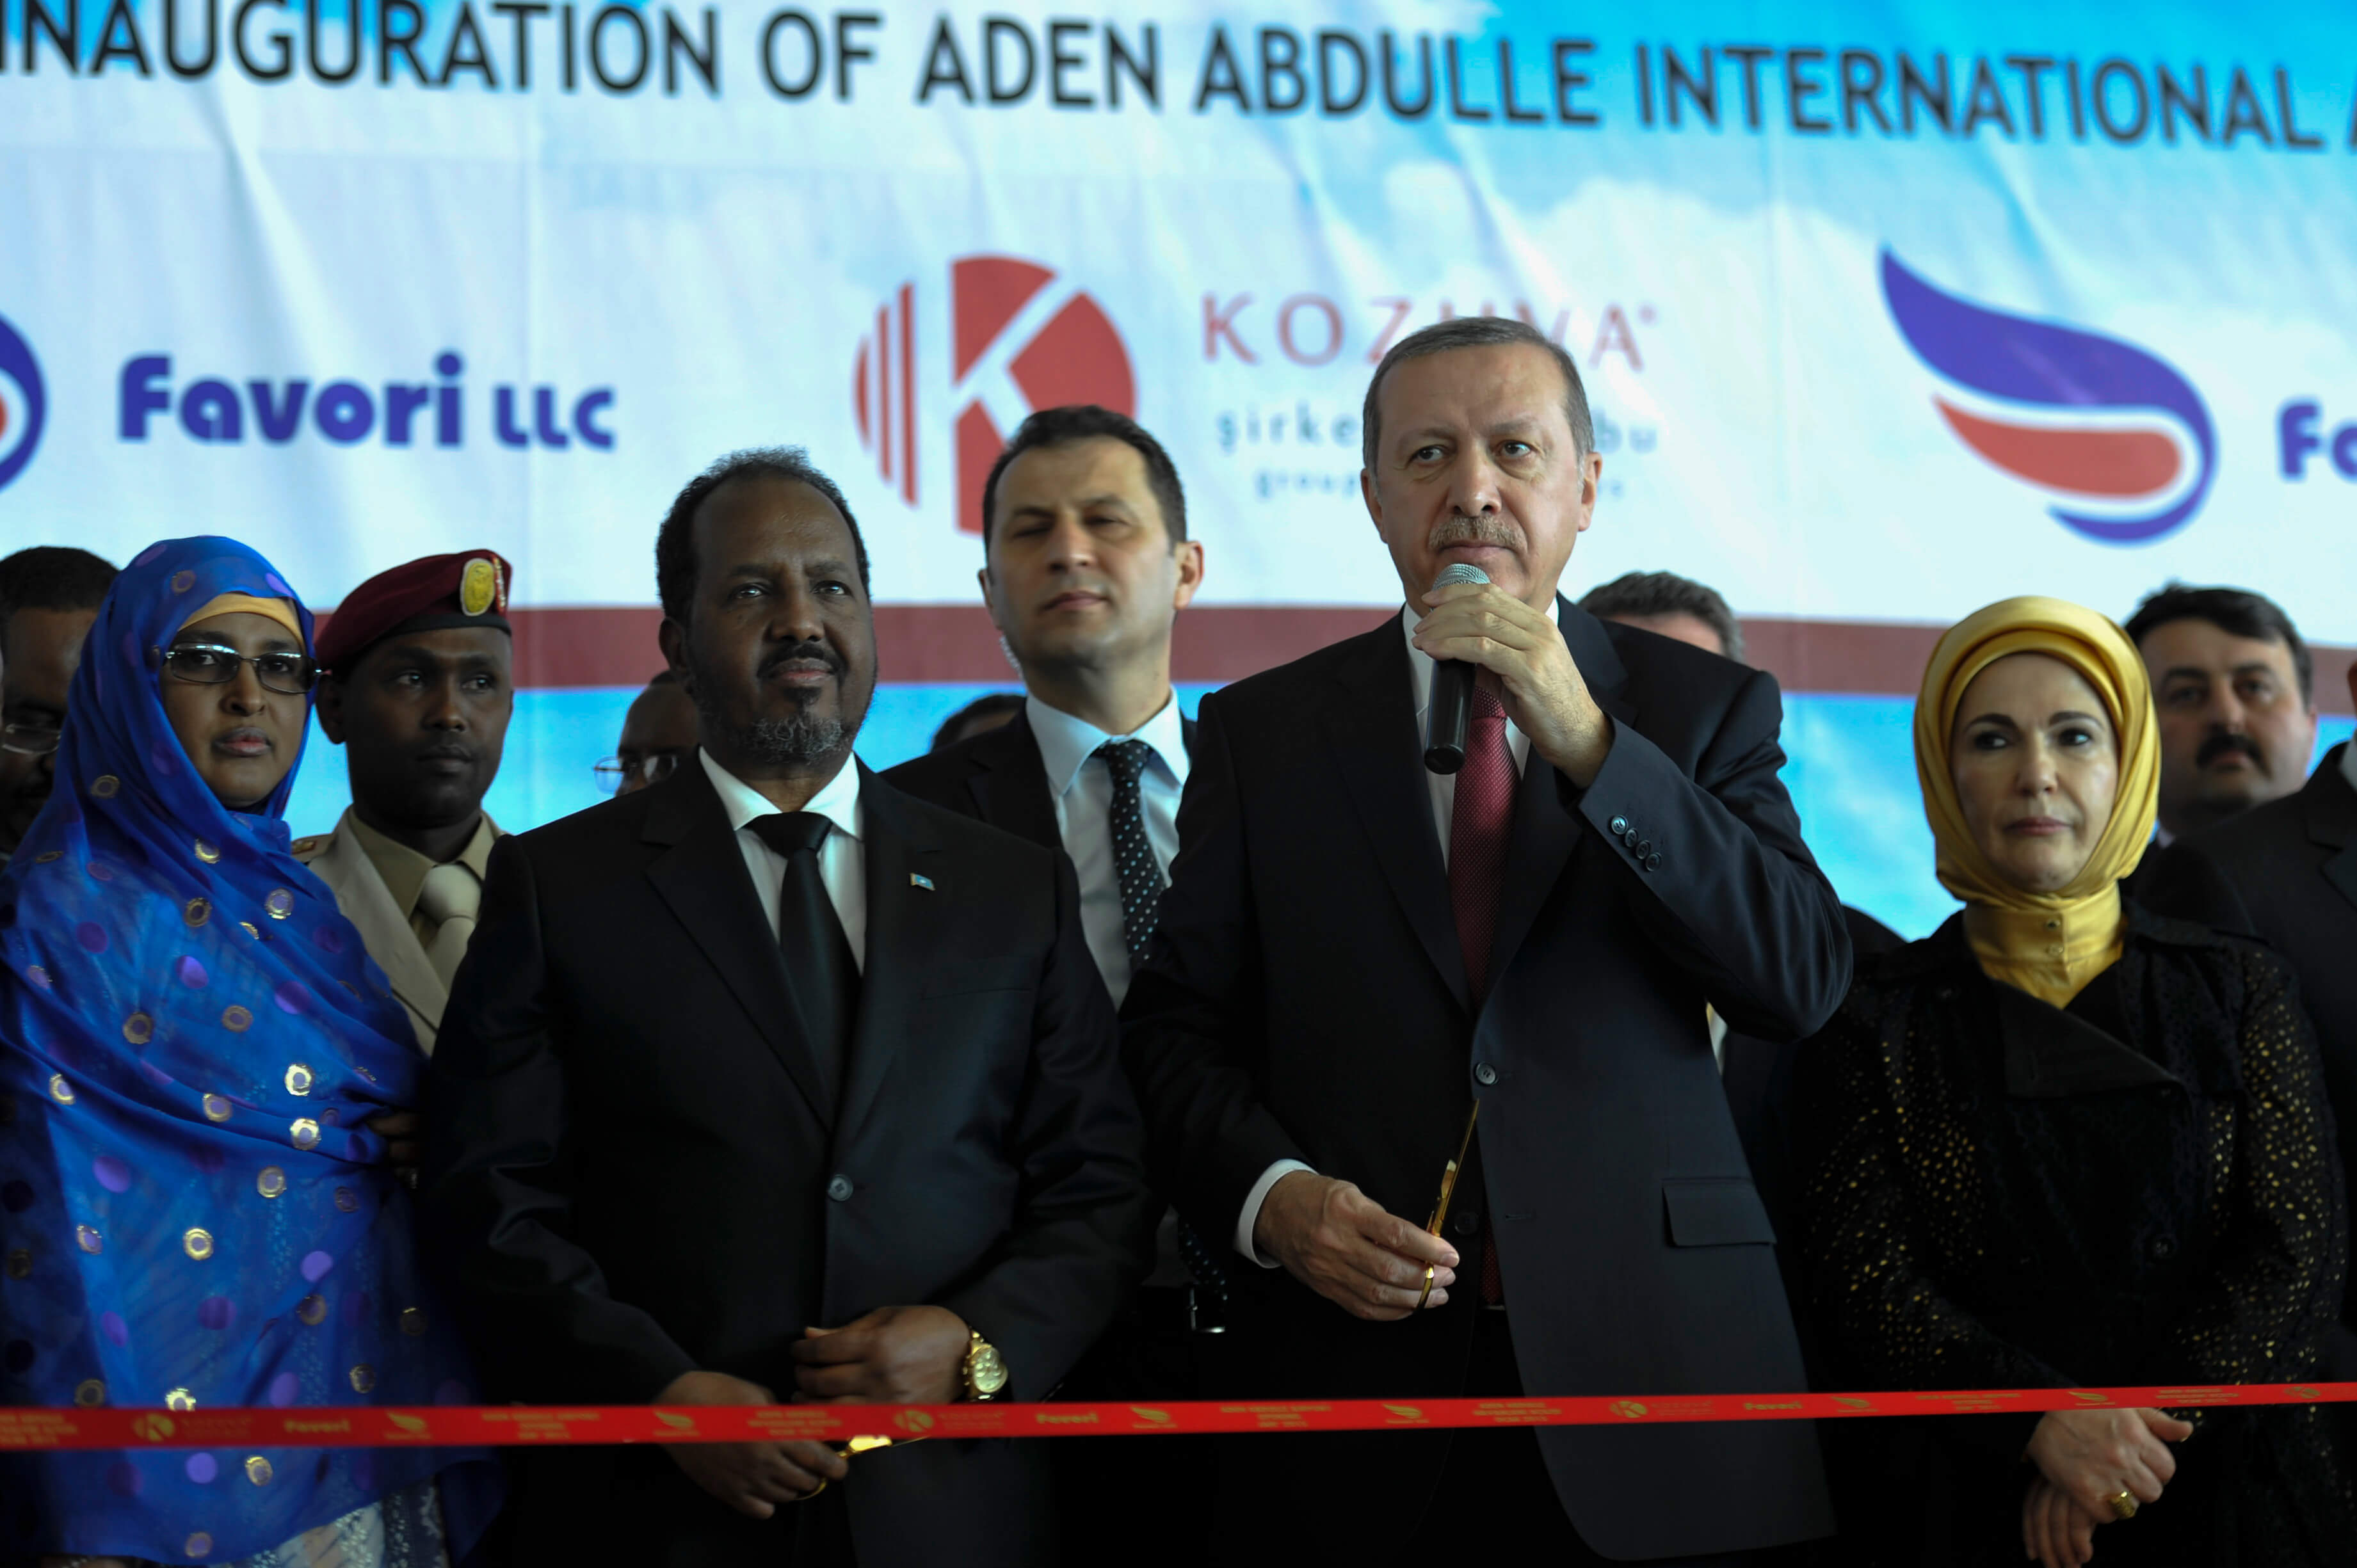 DeCordier-De Turkse president Erdogan opent in 2015 samen met zijn Somalische ambtsgenoot Hassan Sheikh Mohamud een nieuw terminal van Aden Abdulle International Airport in Mogadishu. Wikicommons